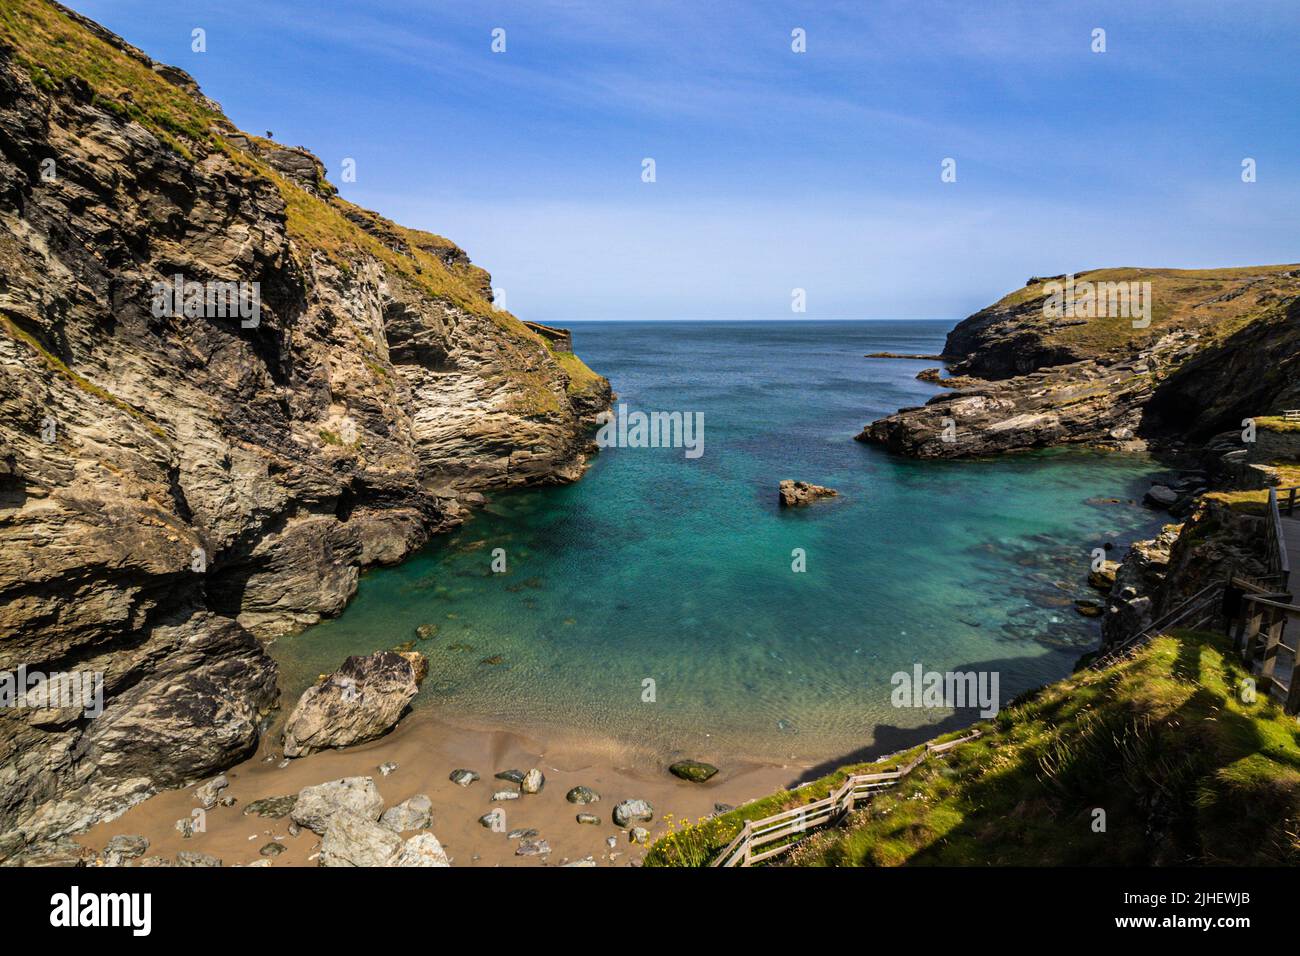 Headland at Tintagel on the Cornish coast, England, UK Stock Photo